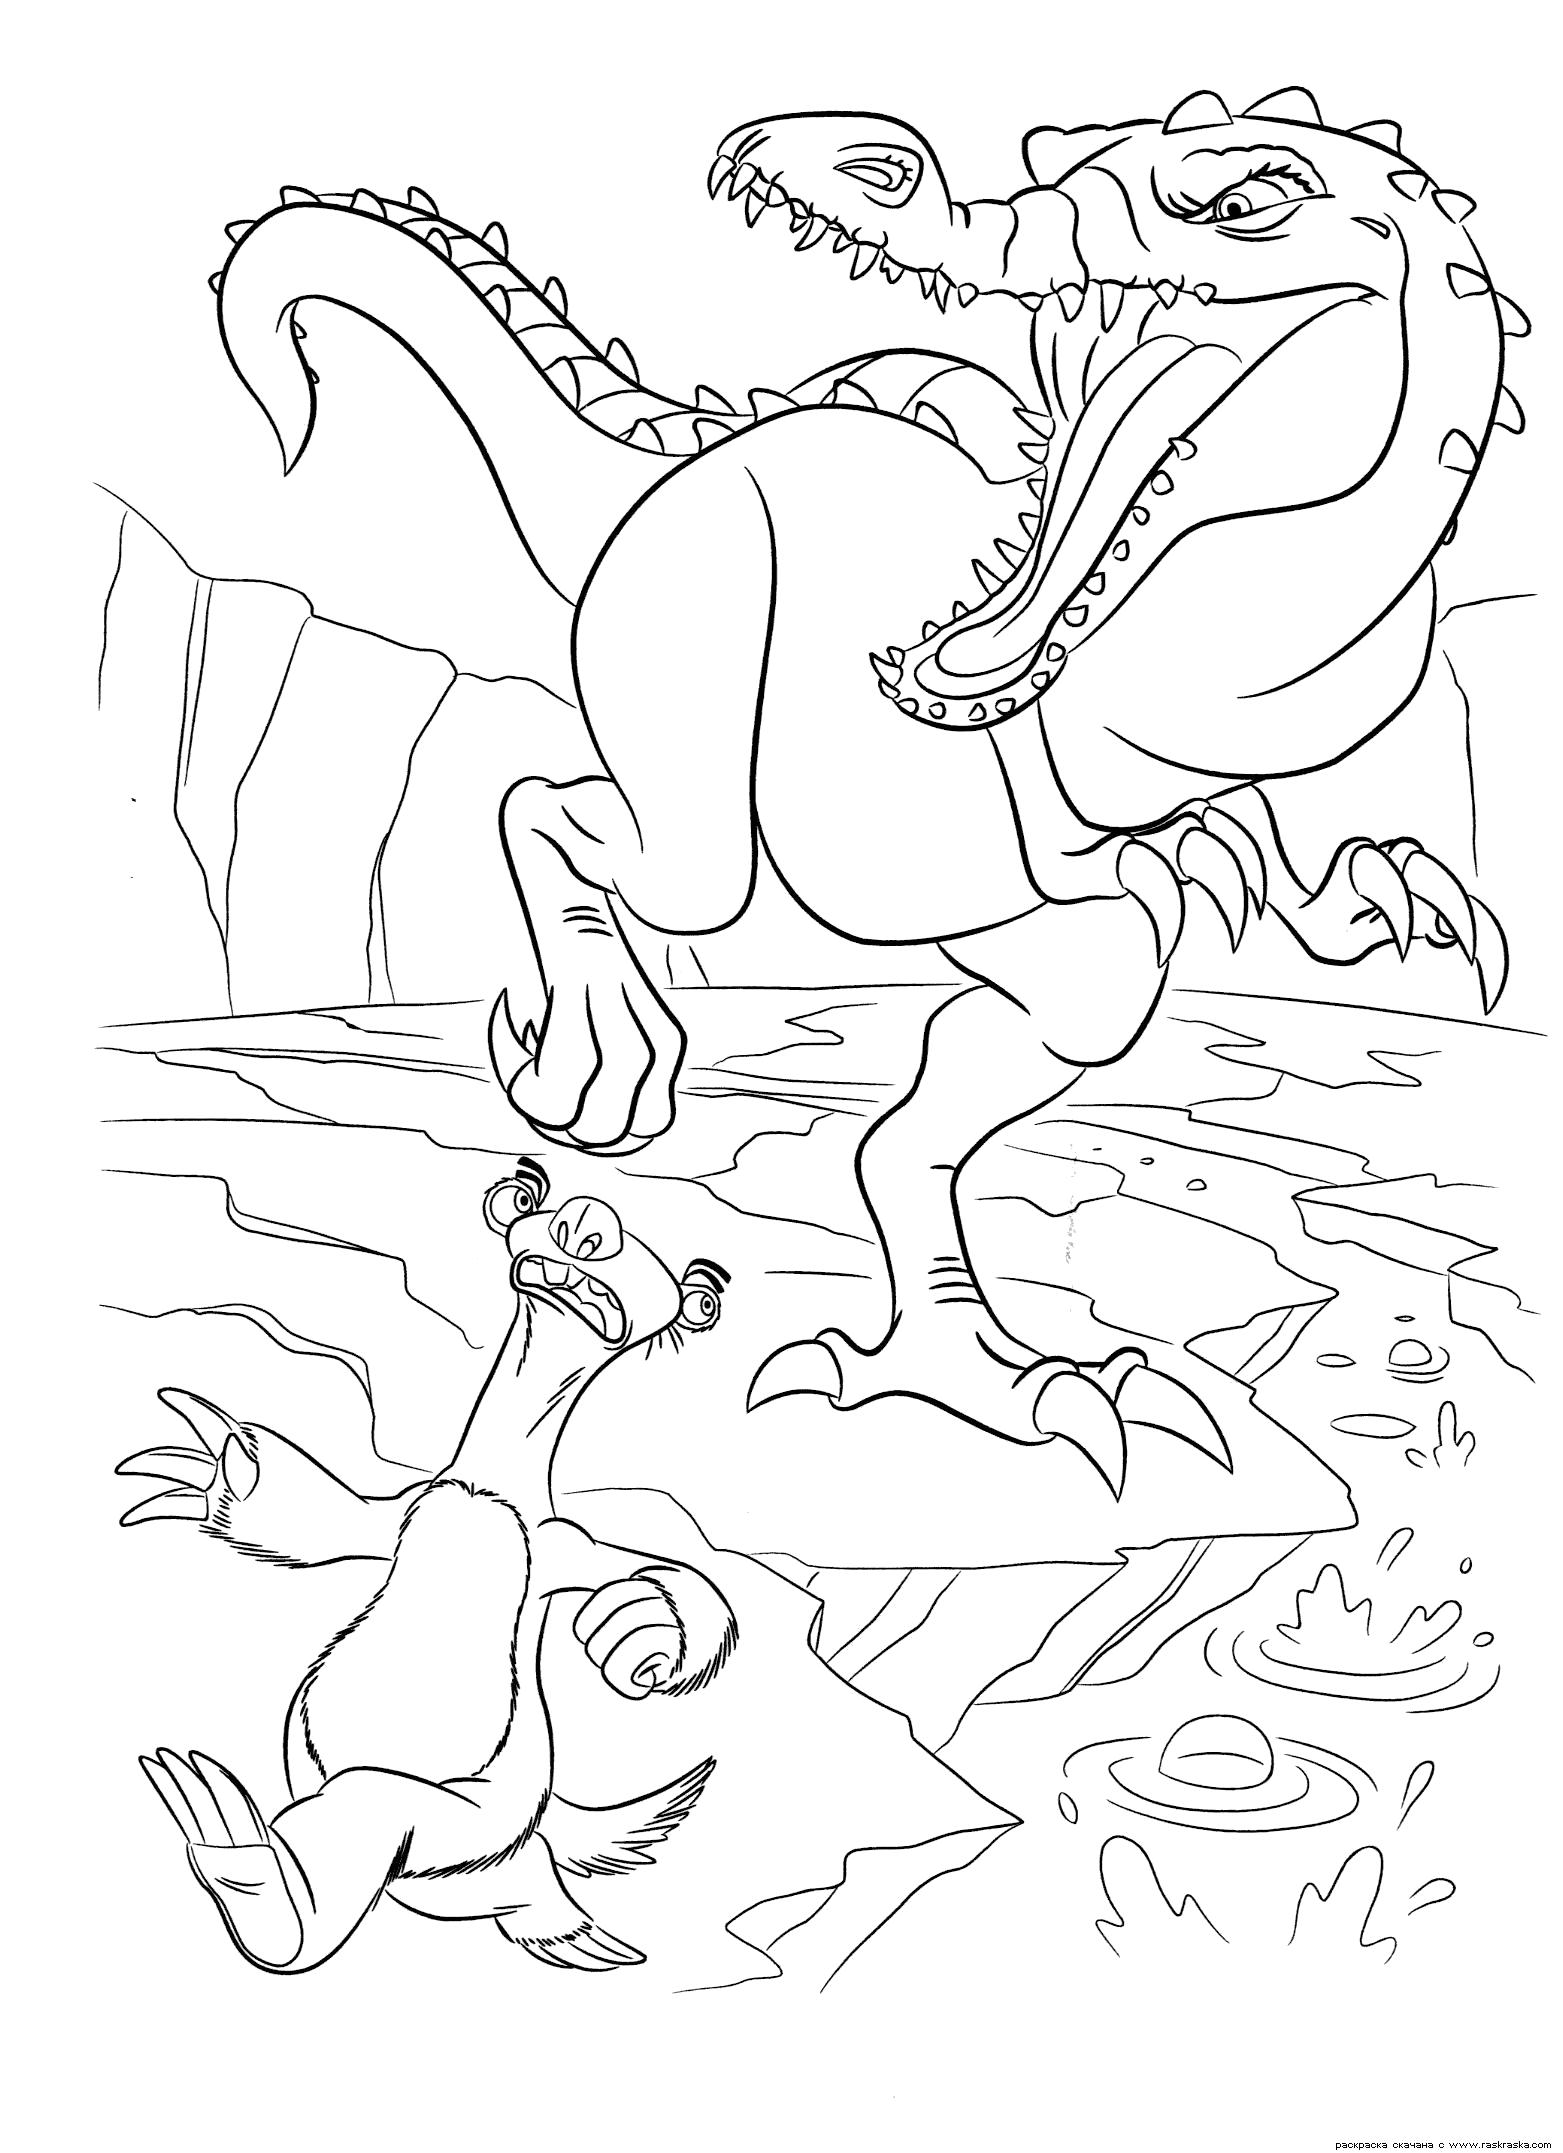 Раскраска Раскраска Руди и Сид. Раскраска Огромный динозавр из мультфильма Ледниковый период 3:Эра динозавров. Скачать бесплатно раскраски динозавра и ленивца для ребенка картинки. динозавр